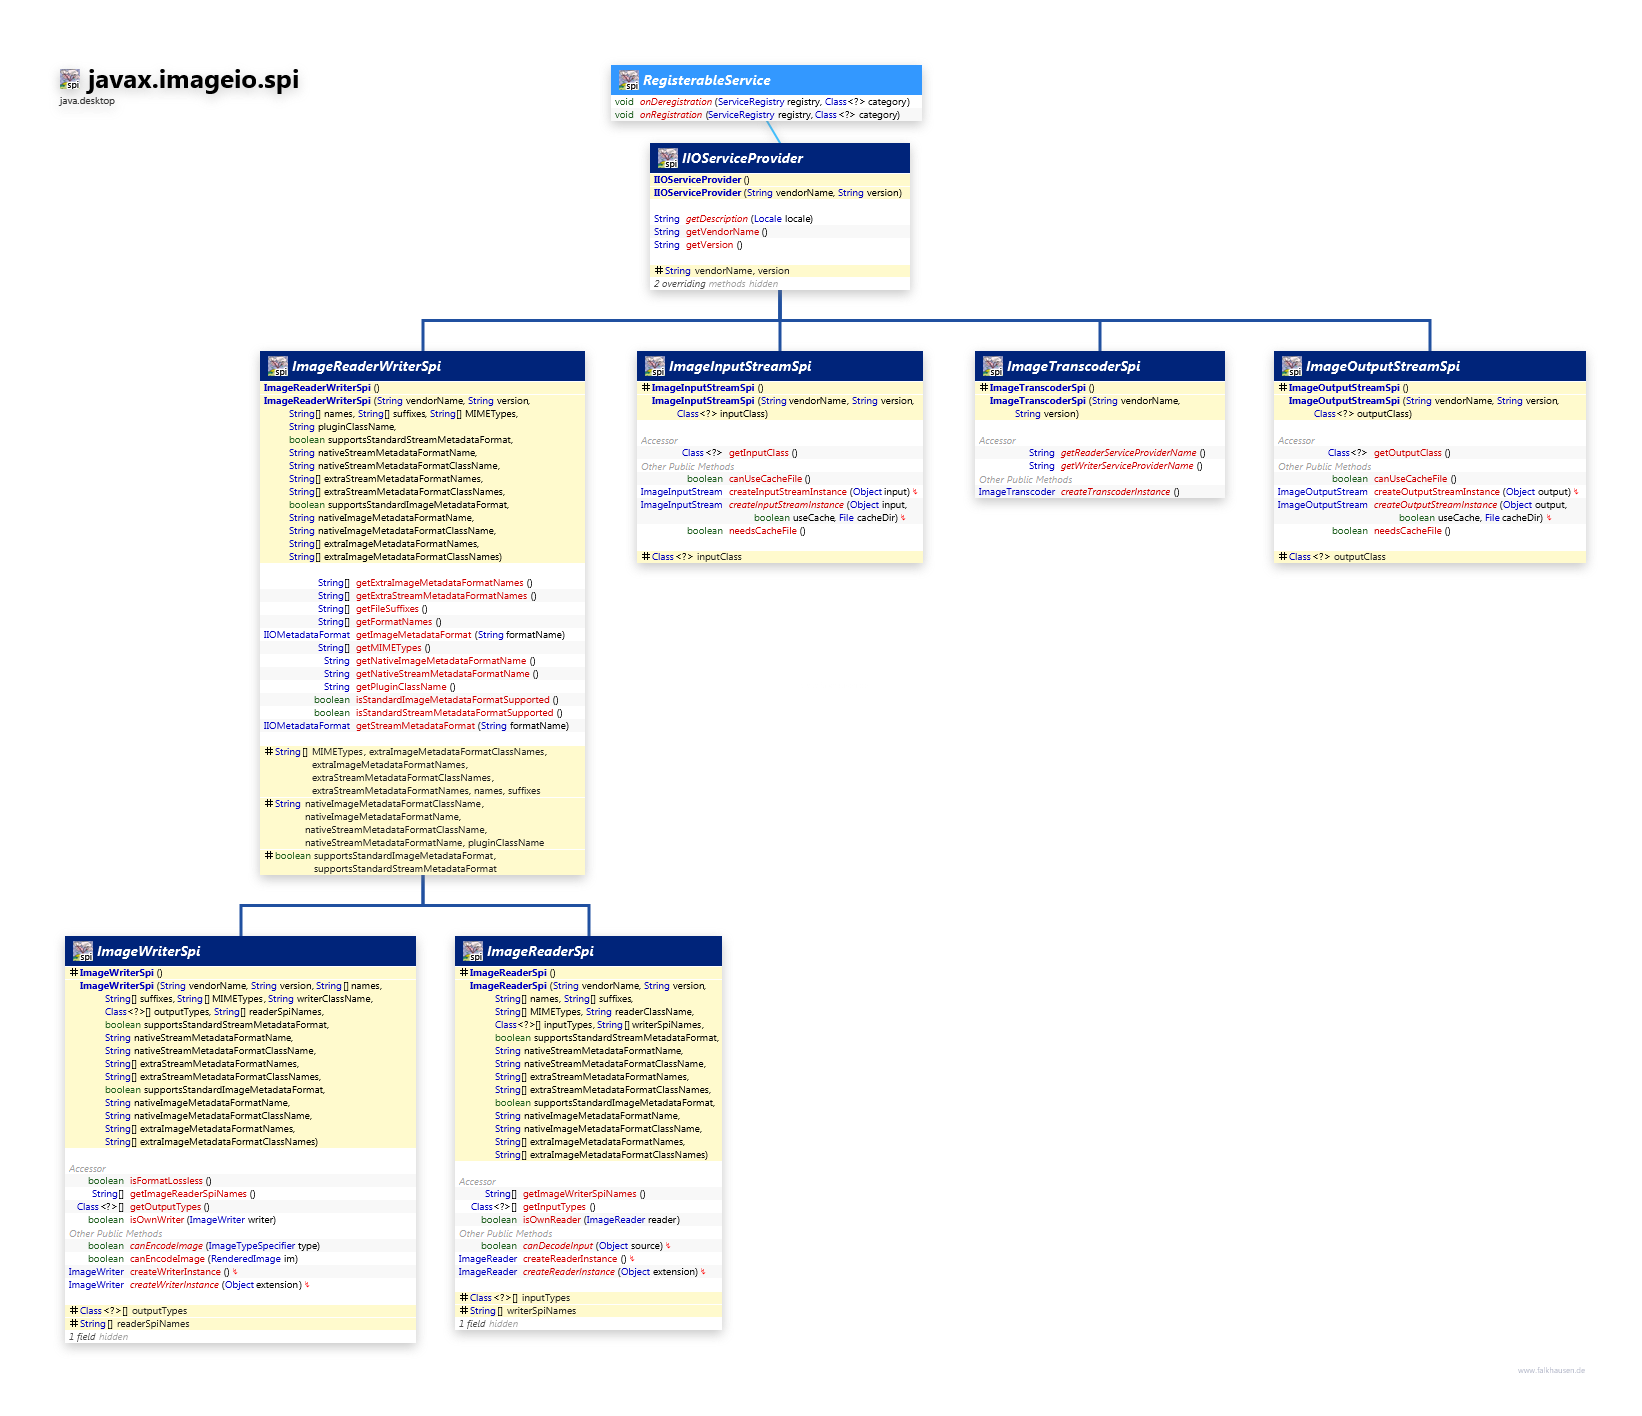 javax.imageio.spi ServiceProvider class diagram and api documentation for Java 10